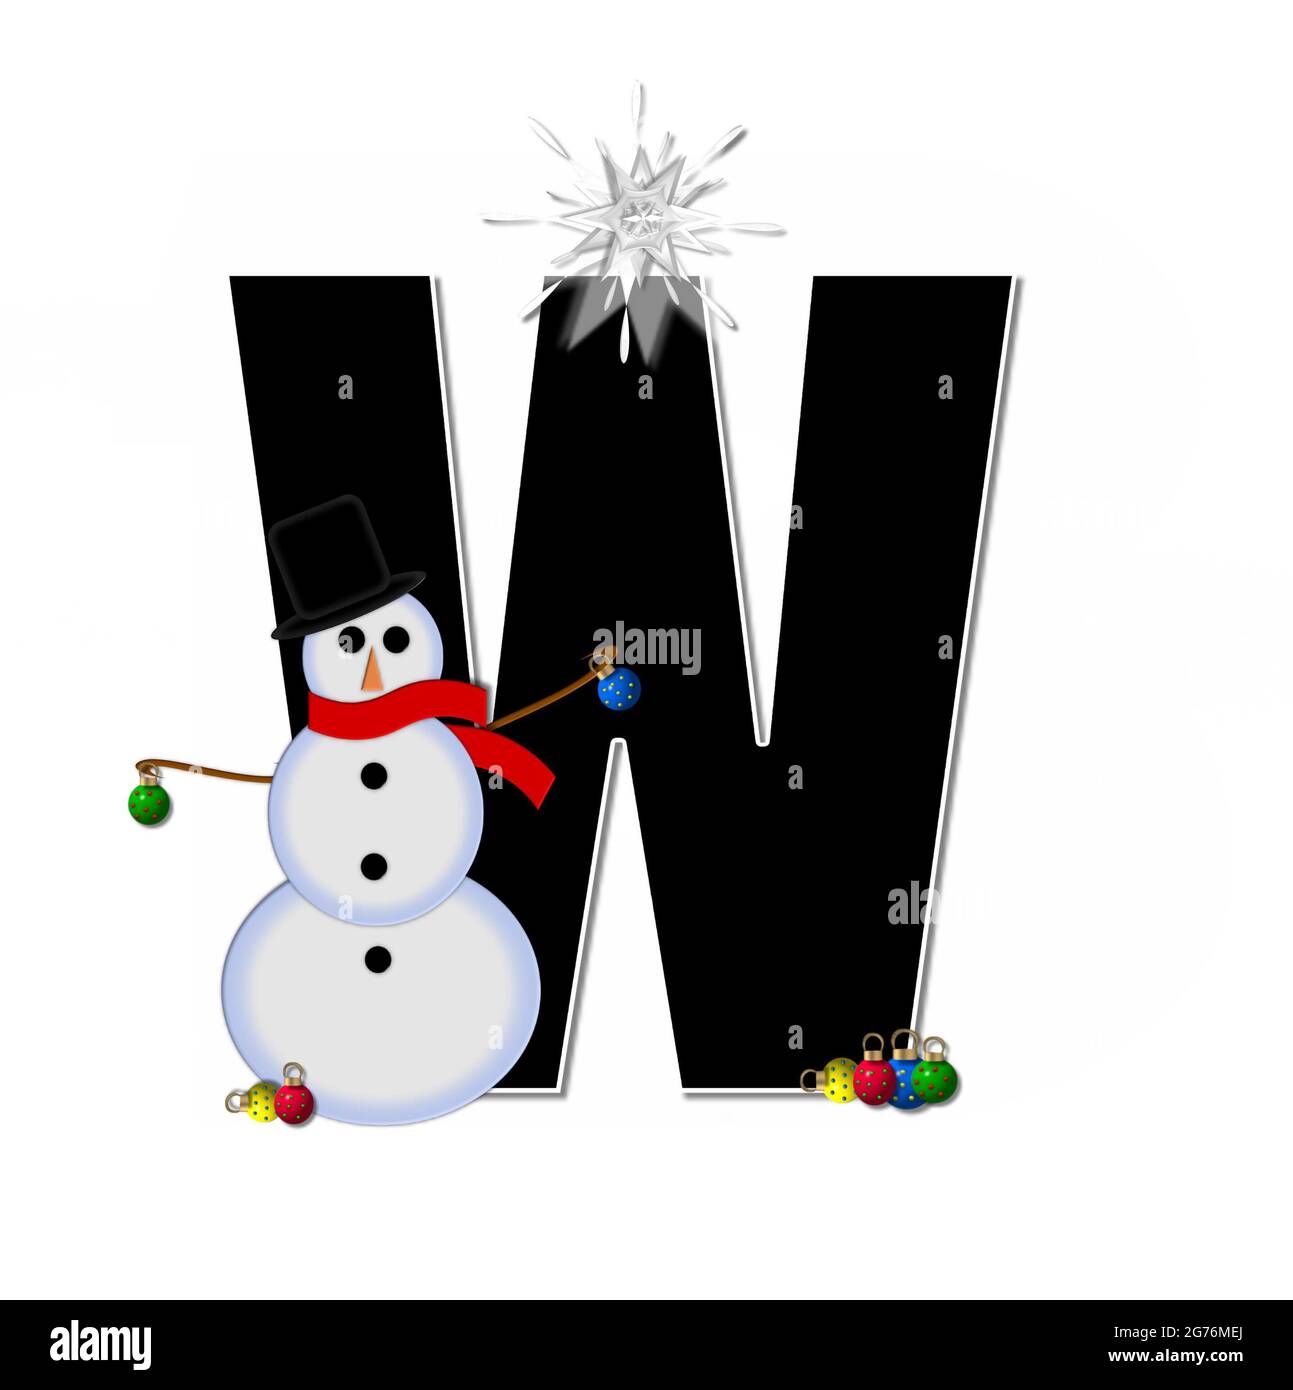 La letra D, en el conjunto del alfabeto 'Frosty', es negra y decorada con  un muñeco de nieve y adornos de Navidad. El muñeco de nieve lleva una  bufanda roja y una